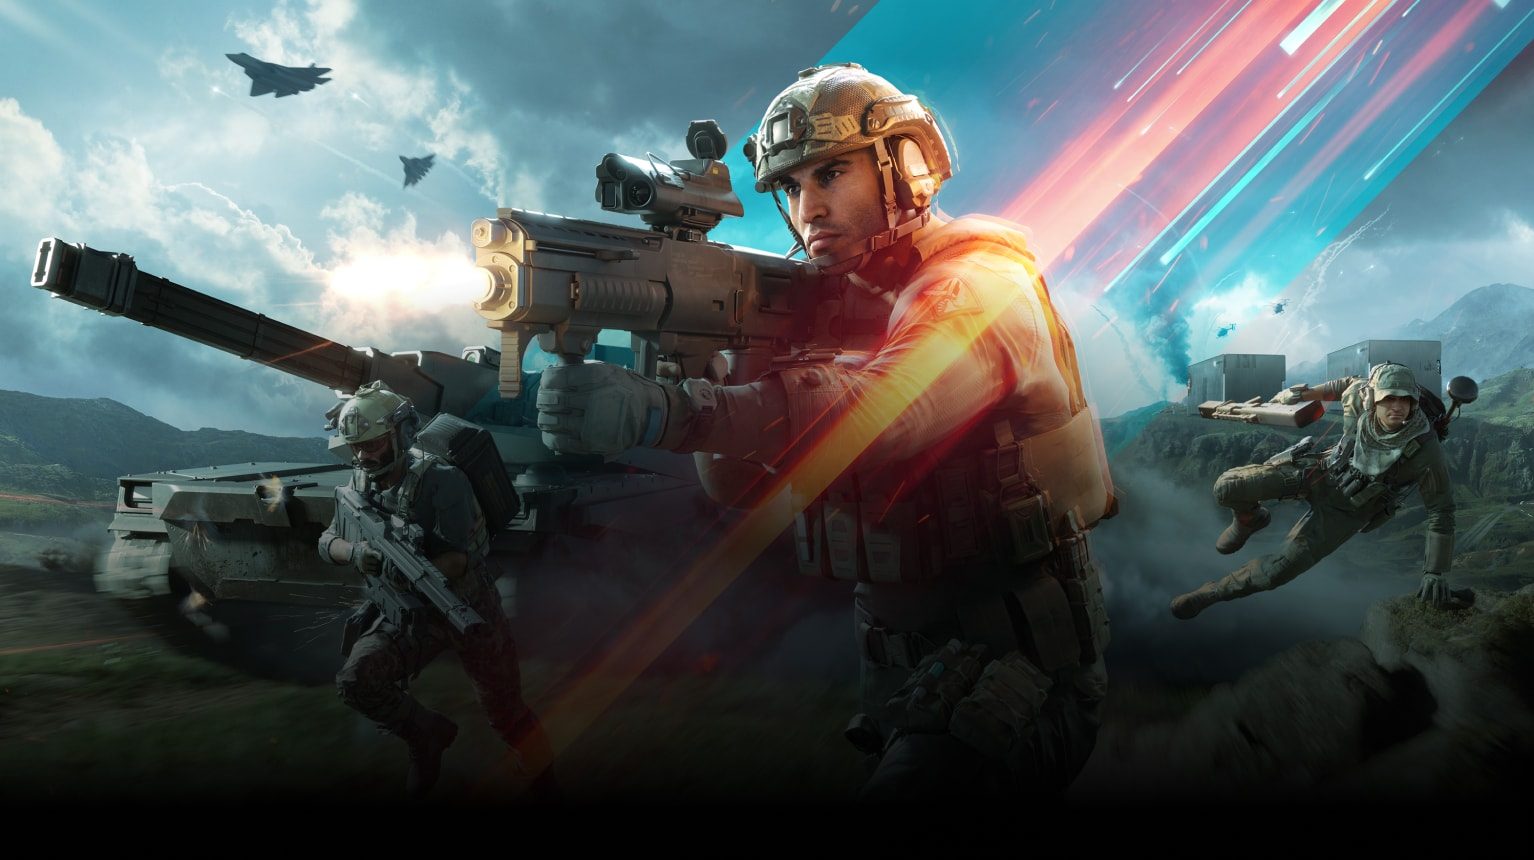 Battlefield 2042: requisitos en PC y detalles de sus pruebas técnicas